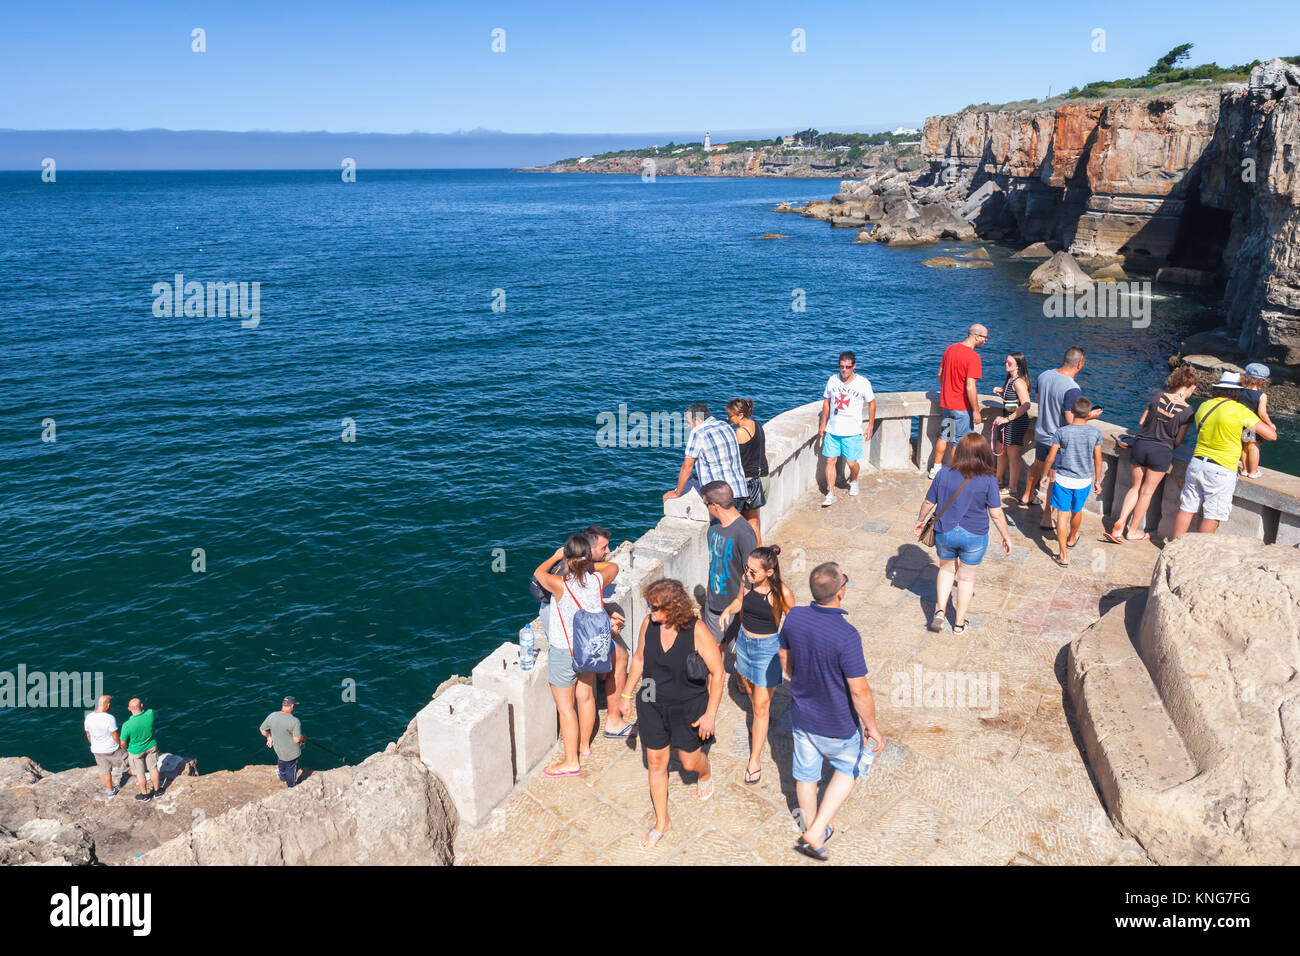 Cascais, Portugal - 14 août 2017 : les touristes observer Boca do Inferno. Les falaises de bord de mer avec le gouffre de la bouche de l'enfer Banque D'Images